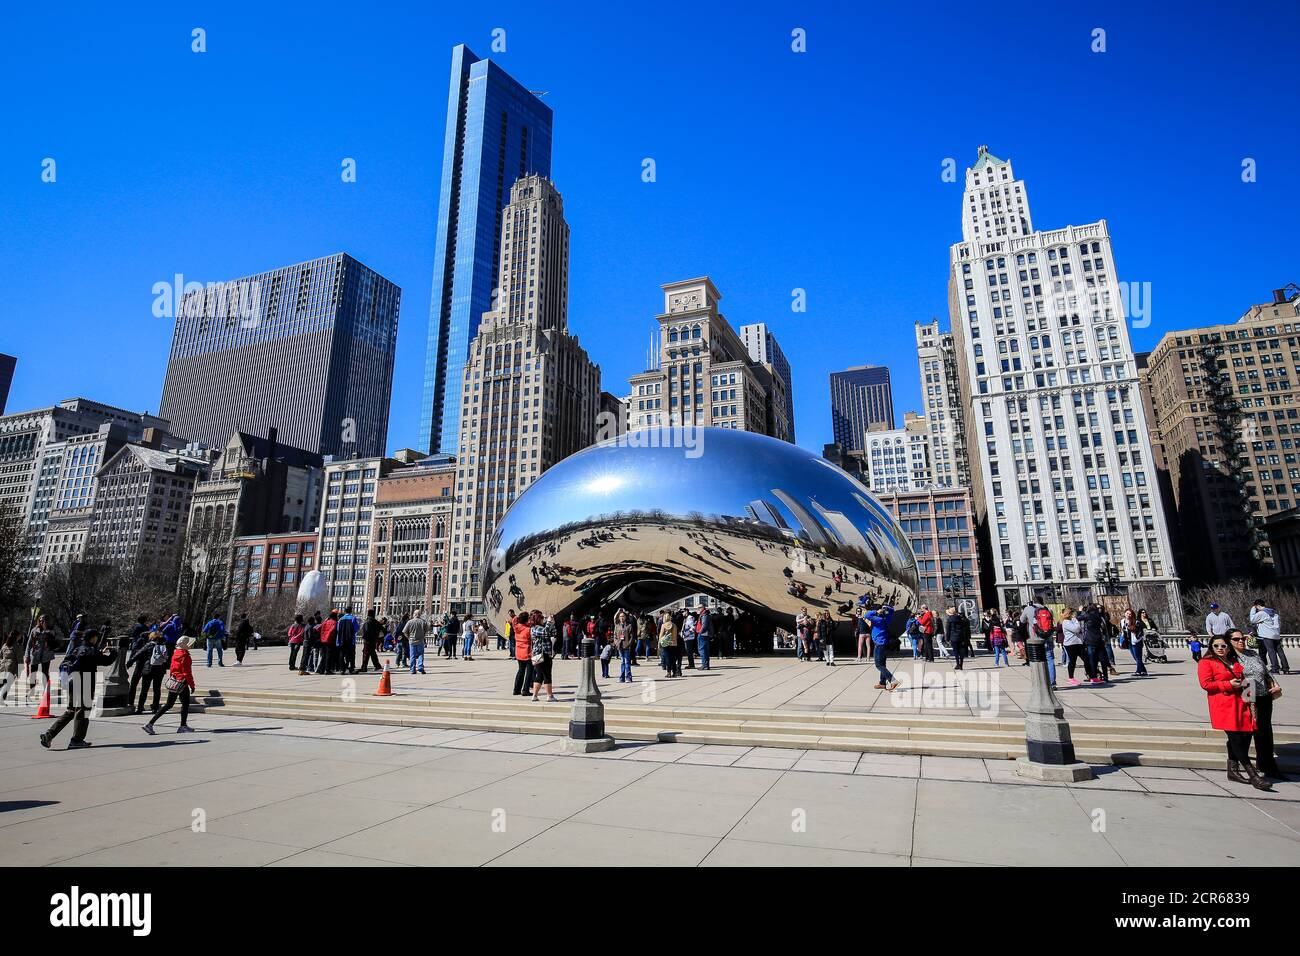 Touristes observant la sculpture Cloud Gate, The Bean, Millennium Park, ville Skyline, Chicago, Illinois, États-Unis, Amérique du Nord Banque D'Images